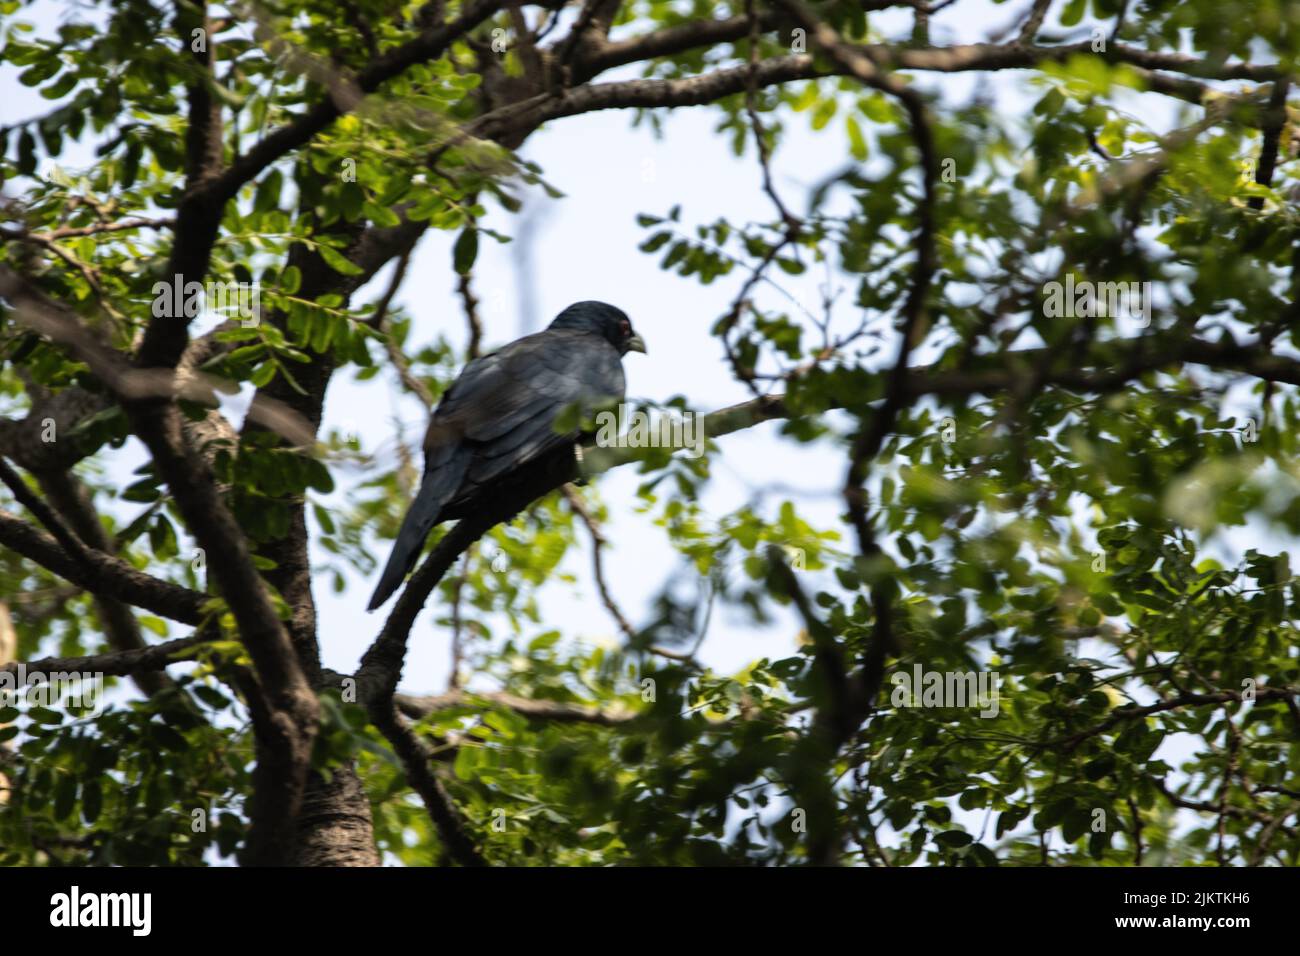 Eine Nahaufnahme des Kuckucksvogels, der auf einem Baumzweig mit grünen Blättern vor einem hellen Himmel sitzt Stockfoto